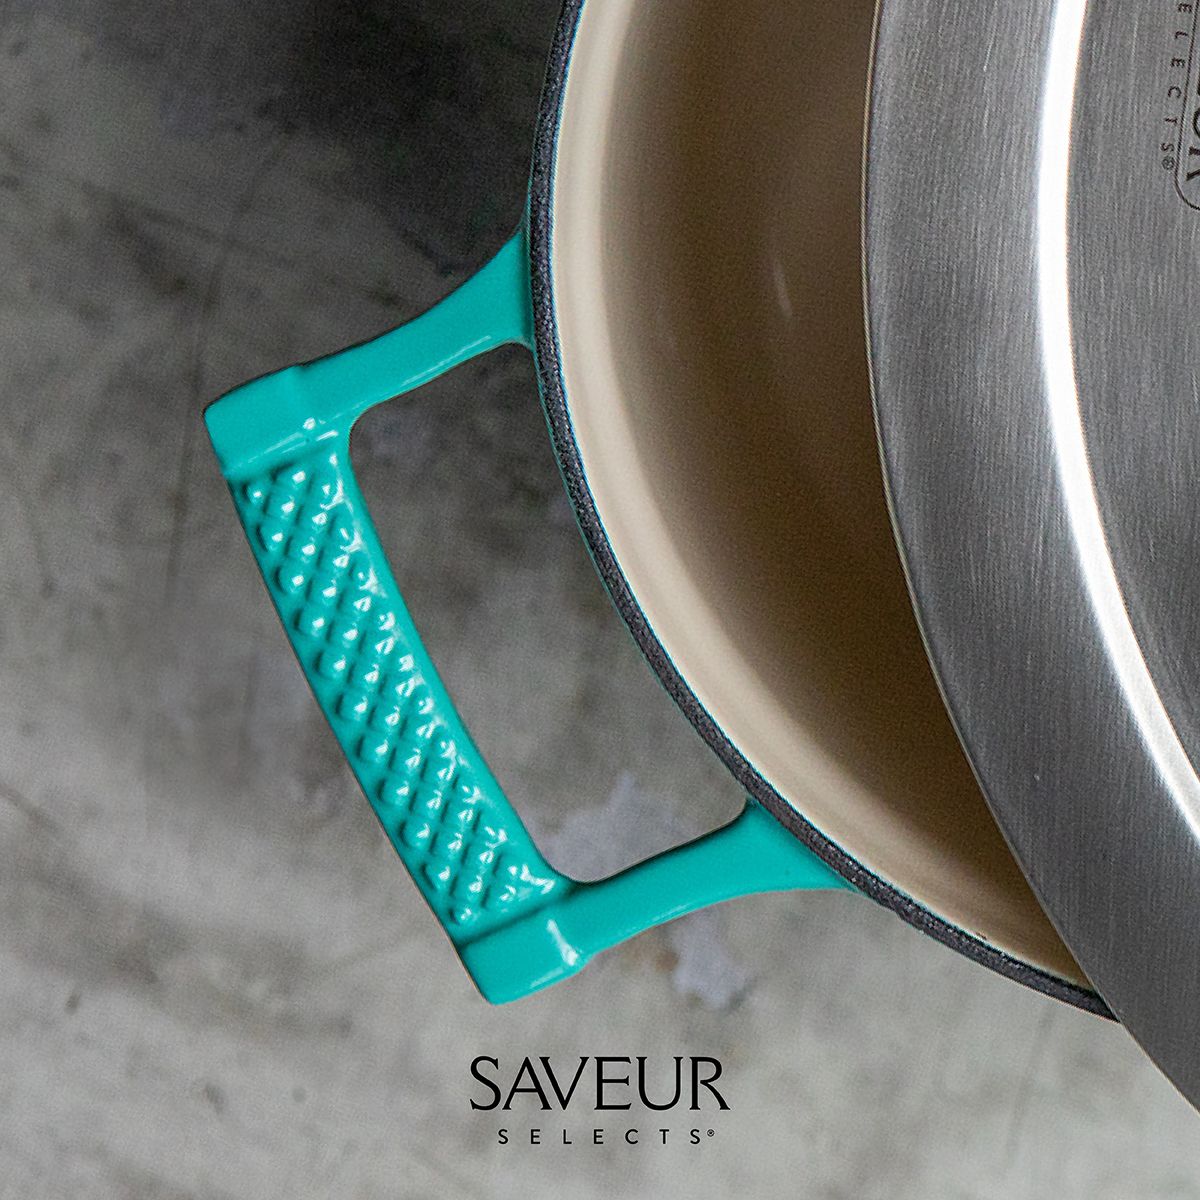 SAVEUR Selects Enameled Cast Iron Braiser 4.5 Quart, Saveur Blue